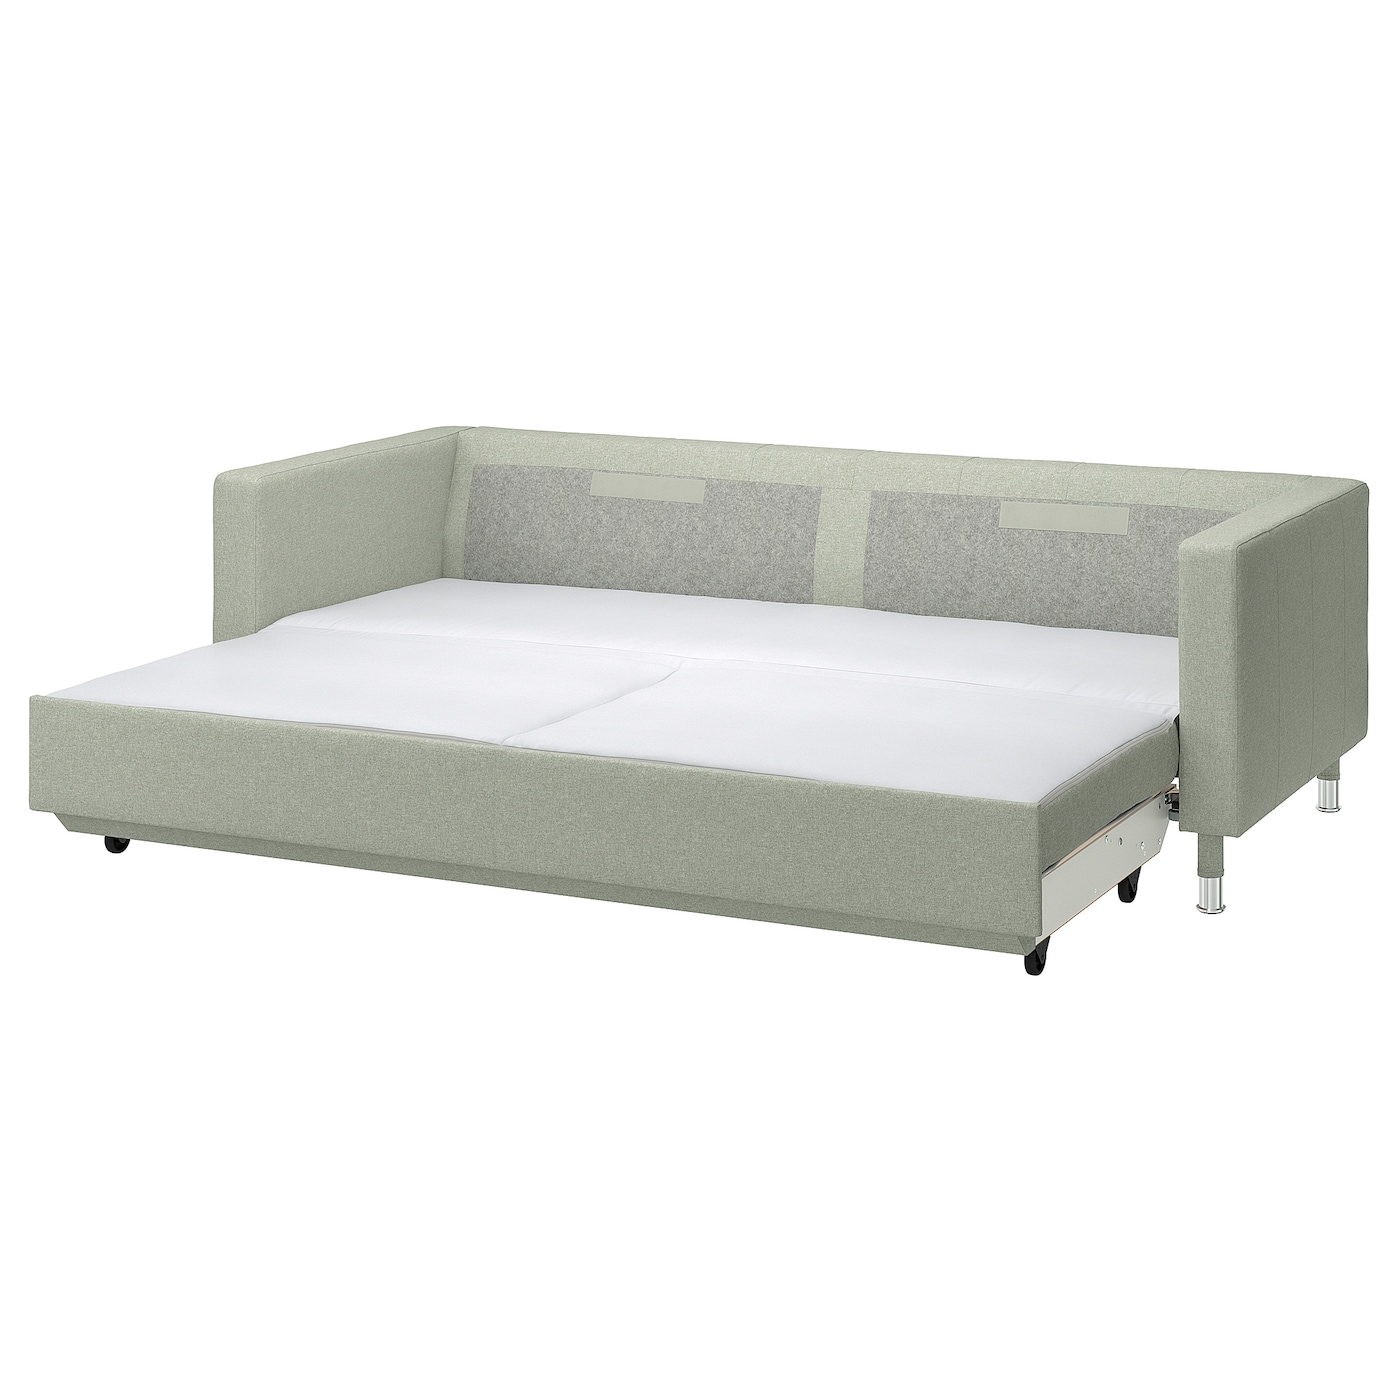 3-местный диван-кровать - IKEA LANDSKRONA, 84x92x223см, зеленый, ЛАНДСКРУНА ИКЕА